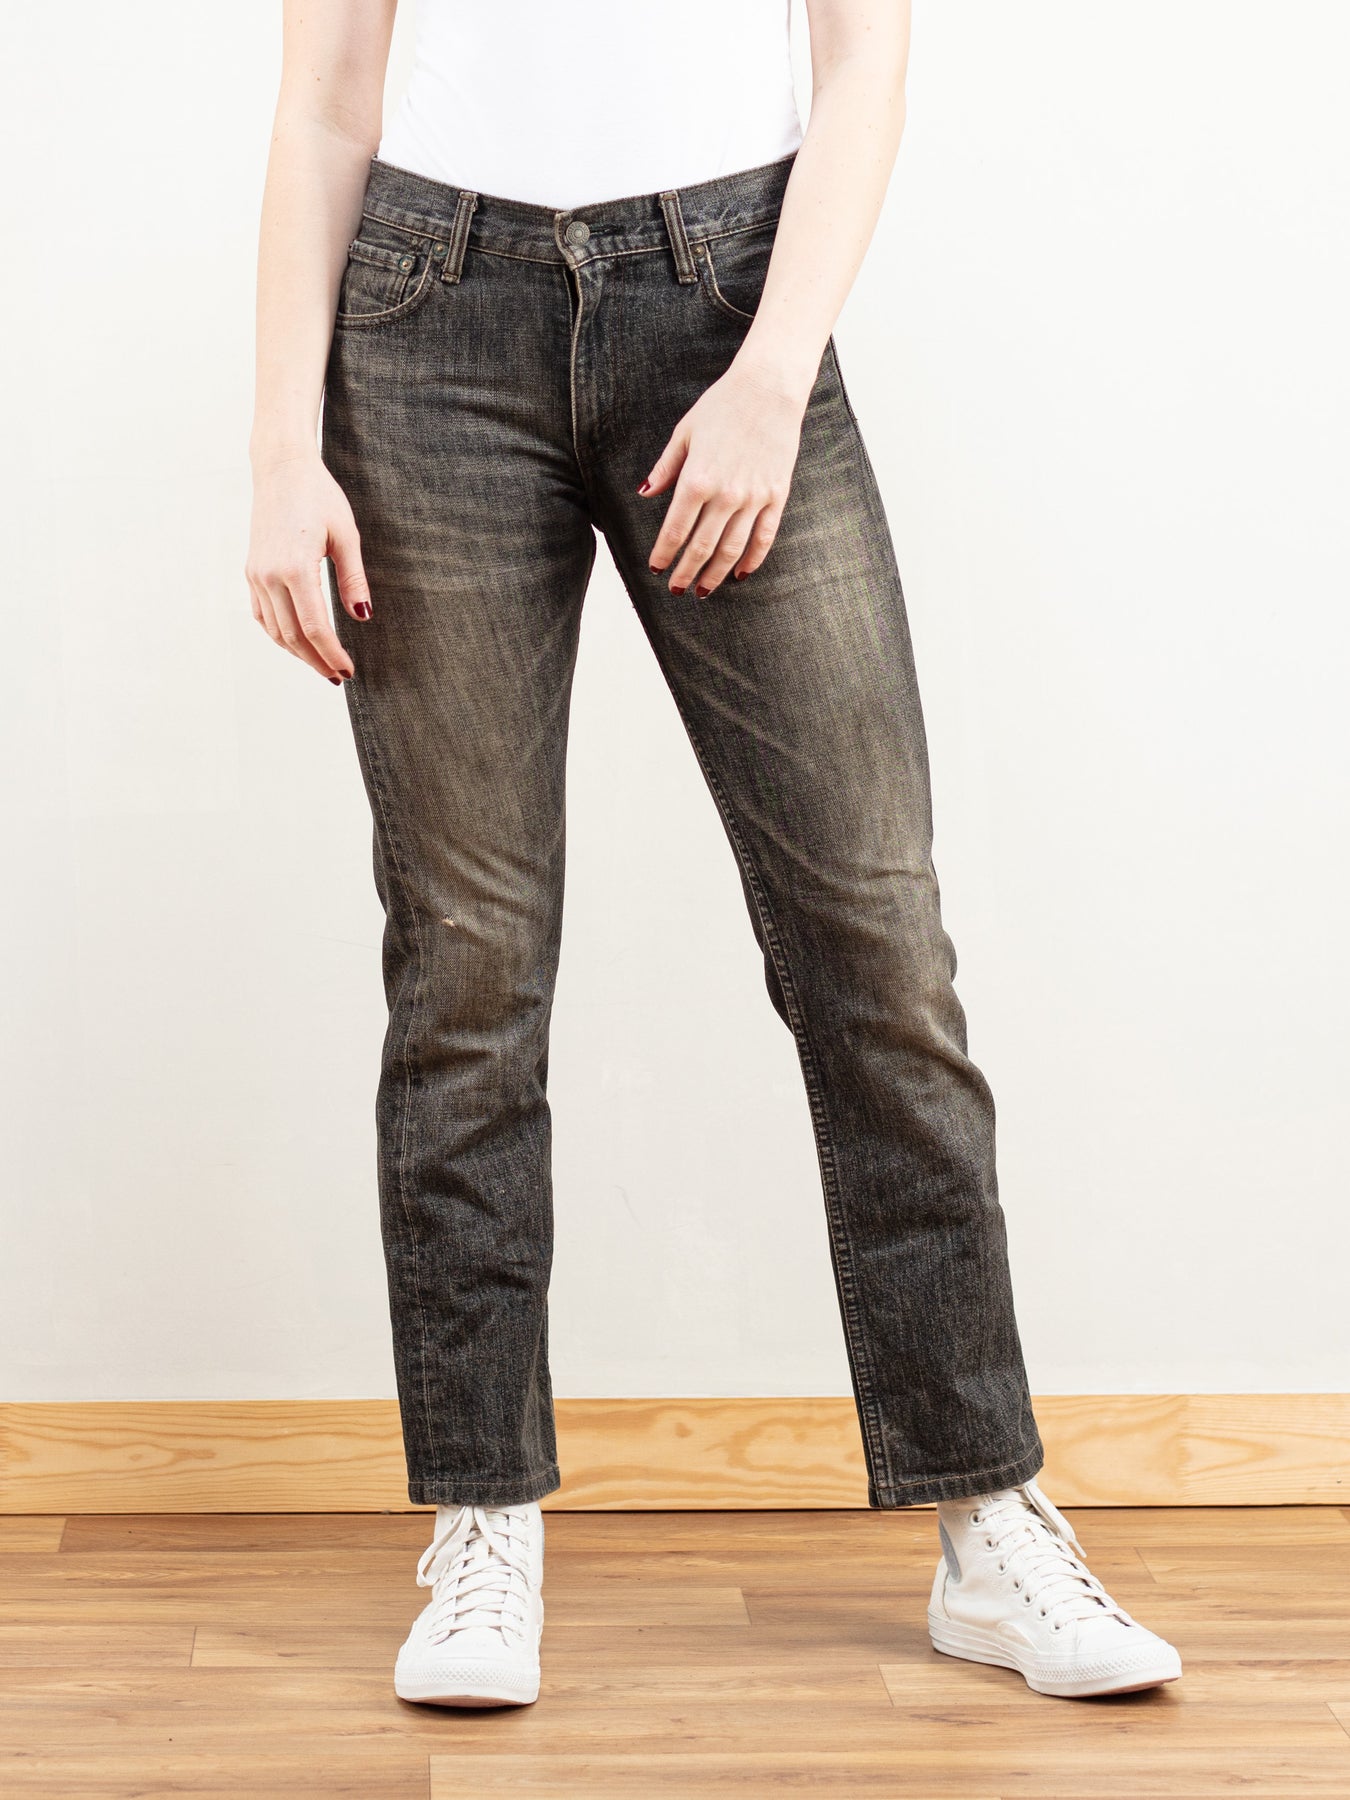 Online Vintage Store  90's Women LEVIS 502 Taper Fit Jeans